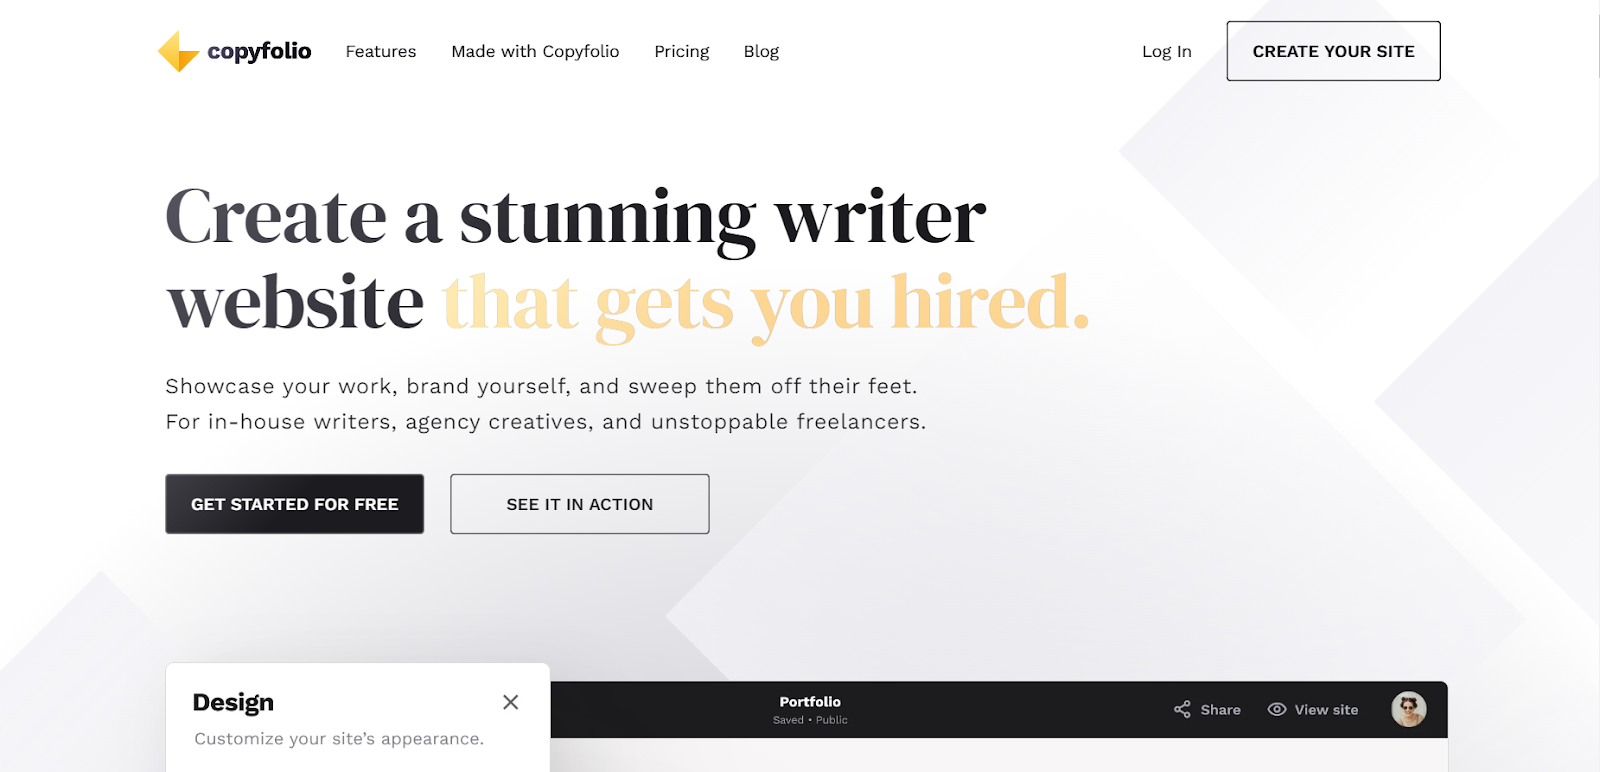 Your Portfolio Series: Create a Writing Portfolio From Scratch